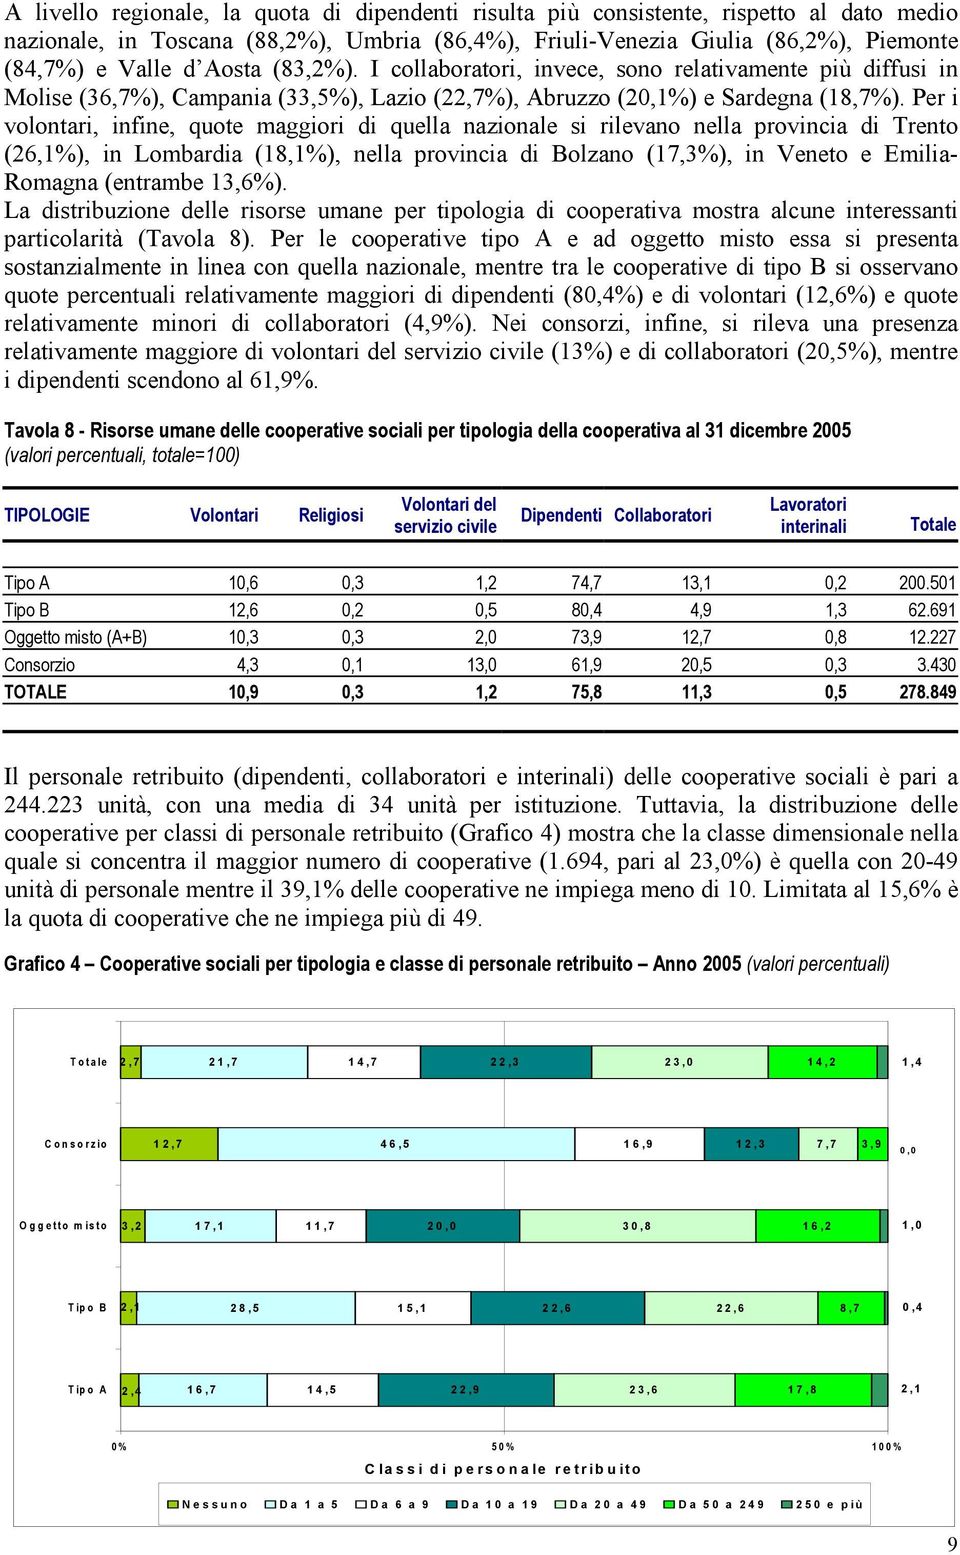 Per i volontari, infine, quote maggiori di quella nazionale si rilevano nella provincia di Trento (26,1%), in Lombardia (18,1%), nella provincia di Bolzano (17,3%), in Veneto e Emilia- Romagna